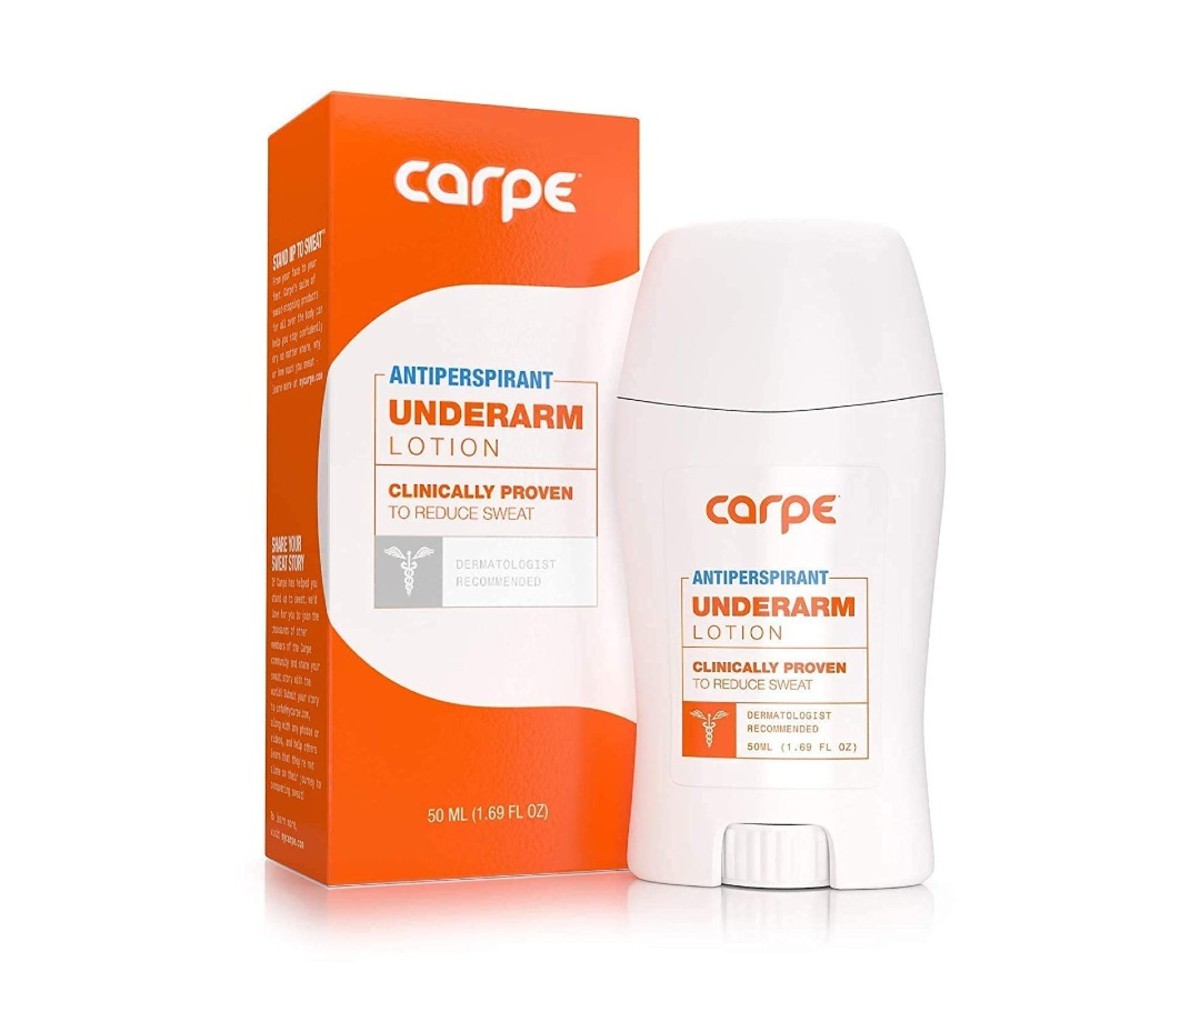 Carpe Underarm Antiperspirant